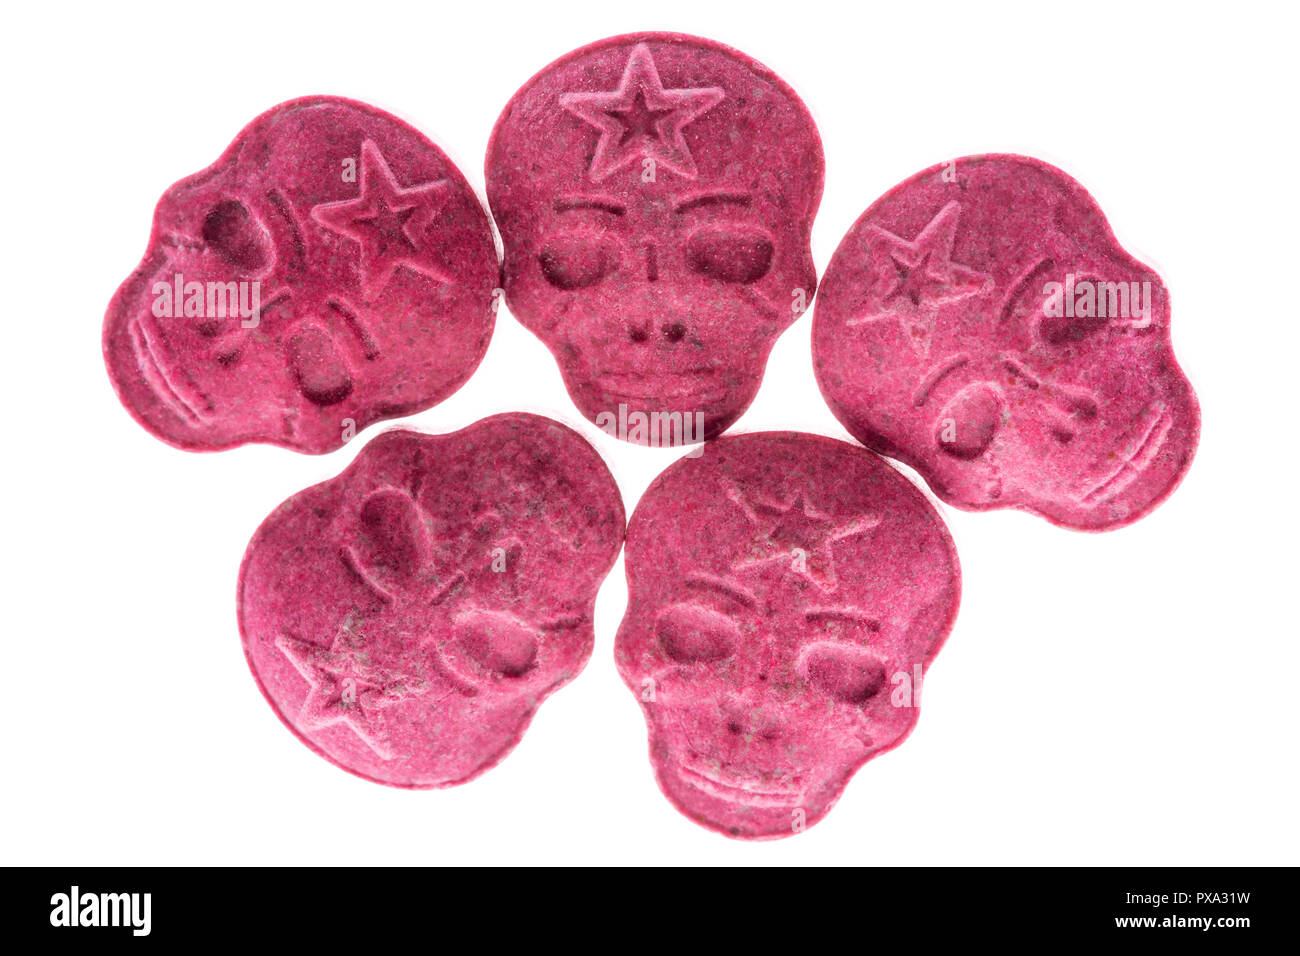 Fünf rote Armee Schädel, Ecstasy, MDMA oder Medikamente wie ein Schädel auf weißem Hintergrund geprägt. Stockfoto